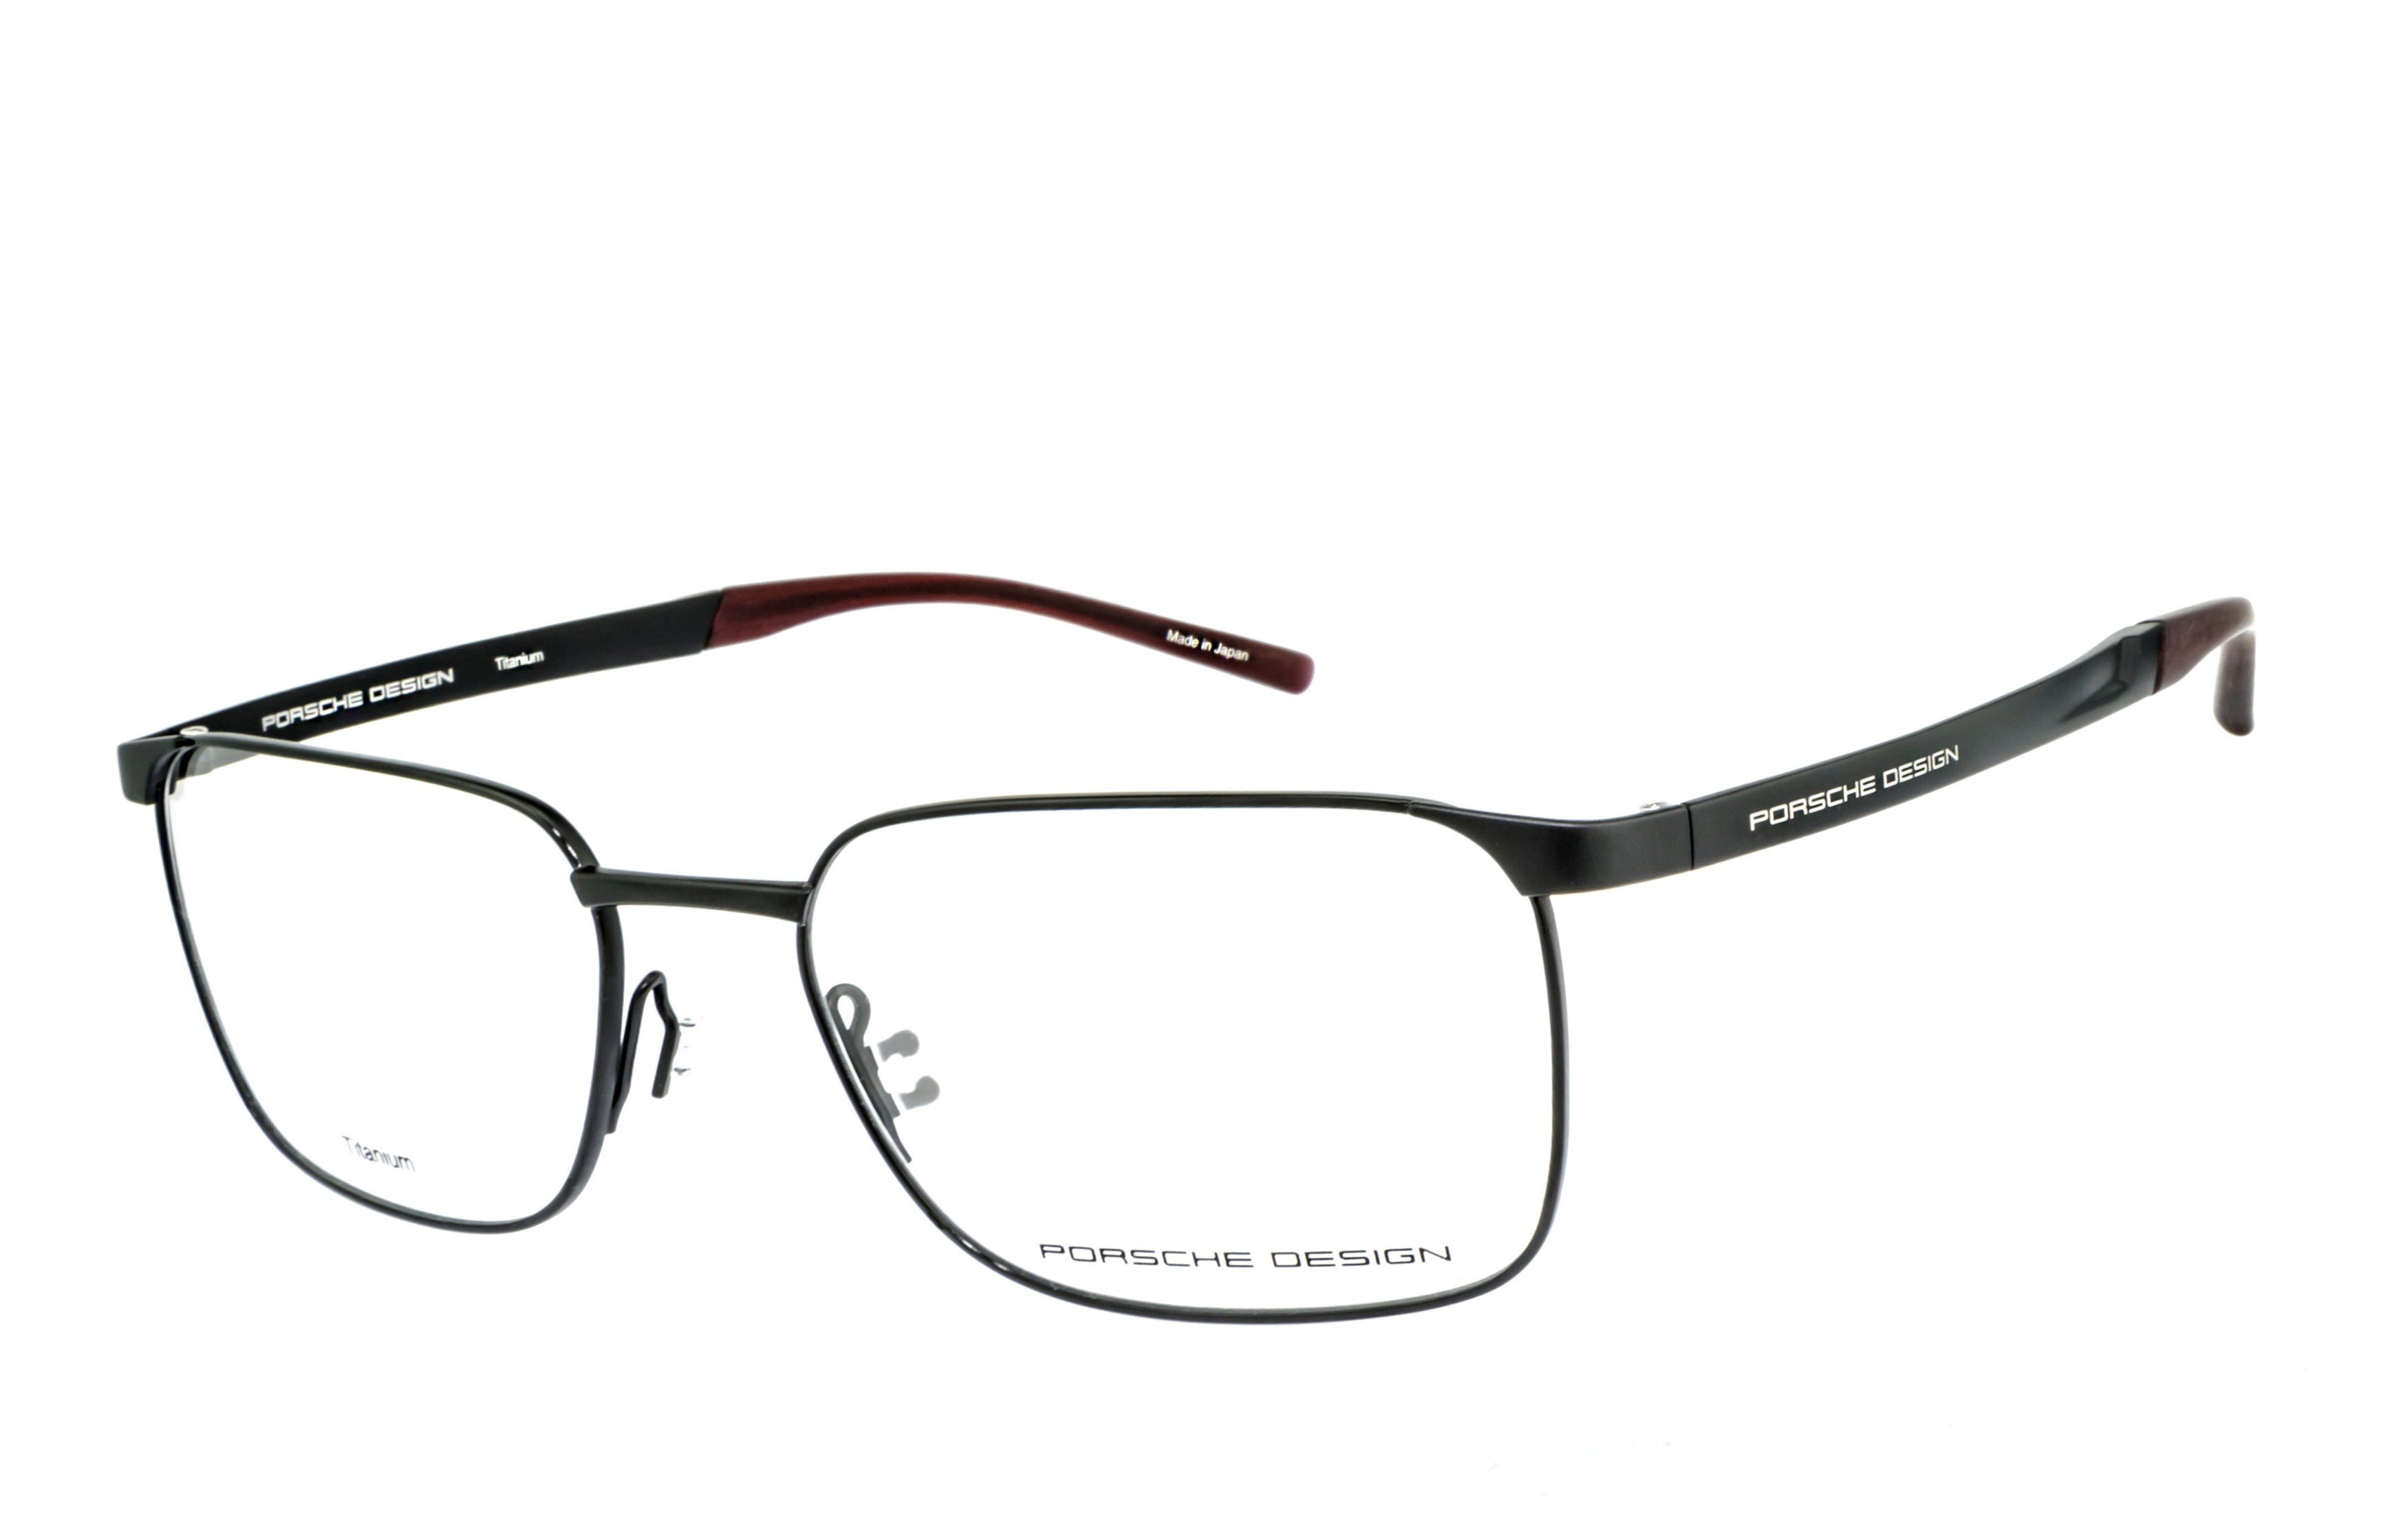 PORSCHE Design Brille ohne Brille, Brille, Blaulicht Gamingbrille, Sehstärke Bürobrille, Bildschirmbrille, Blaulichtfilter